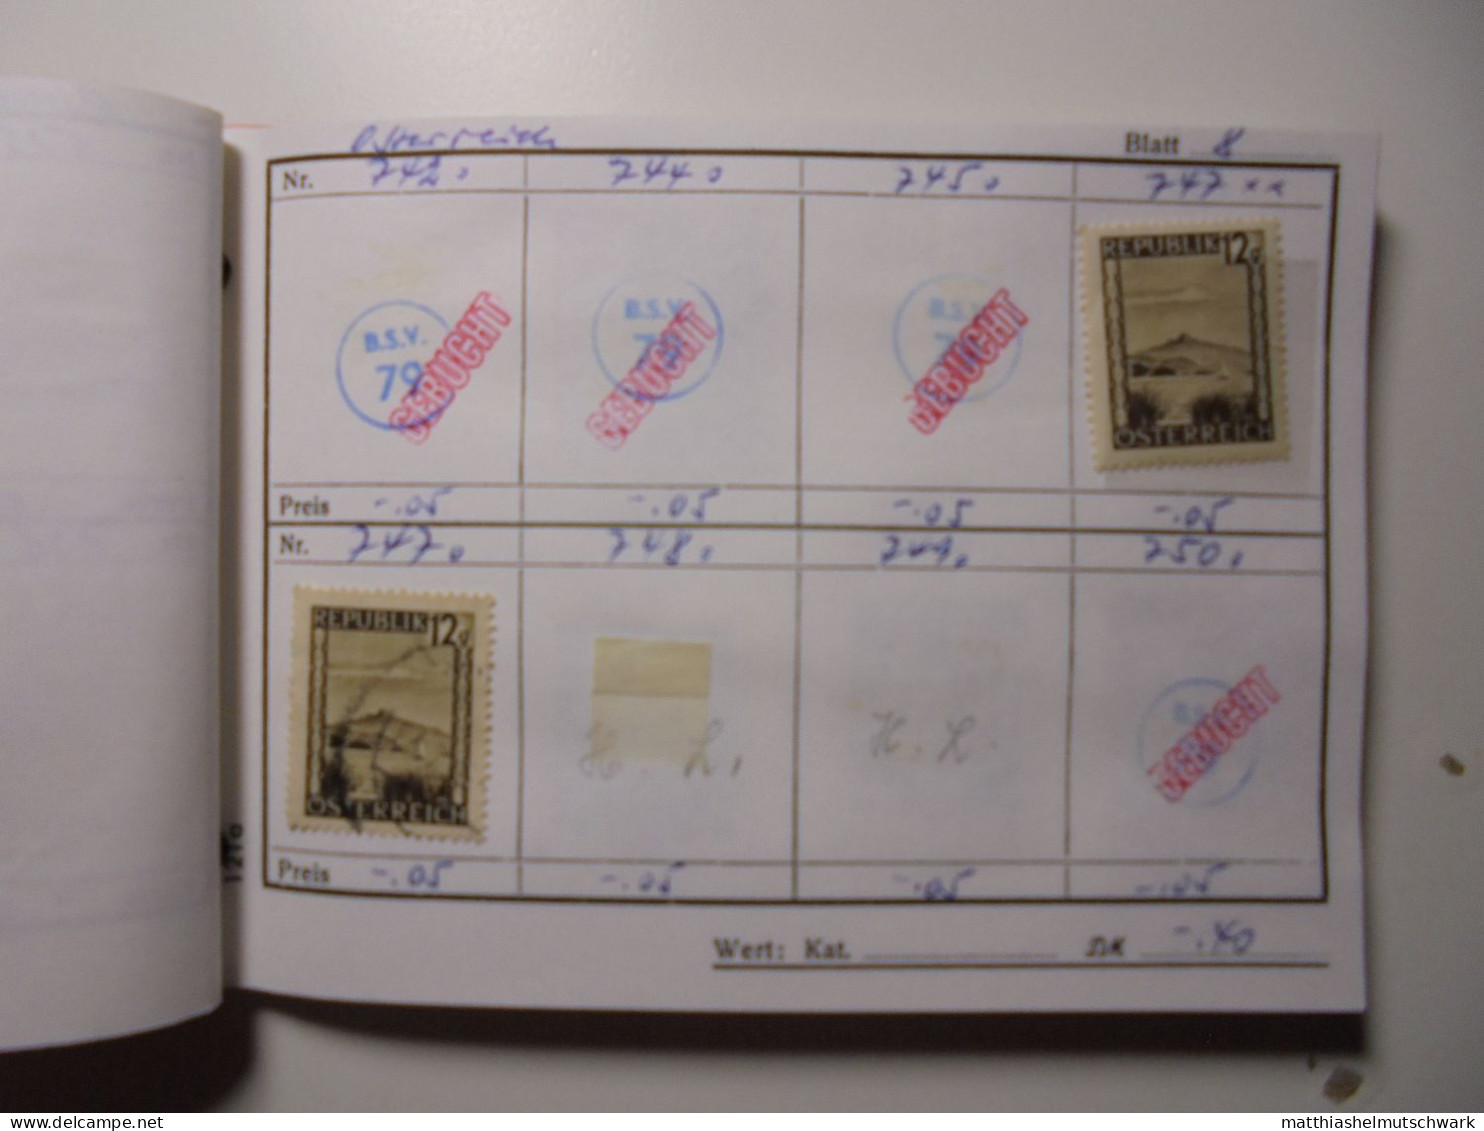 Auswahlheft Nr. 647 31 Blätter 196 Briefmarken xx, x Österreich ca. 1892-1987/Mi Nr. 51-1893, unvollstän